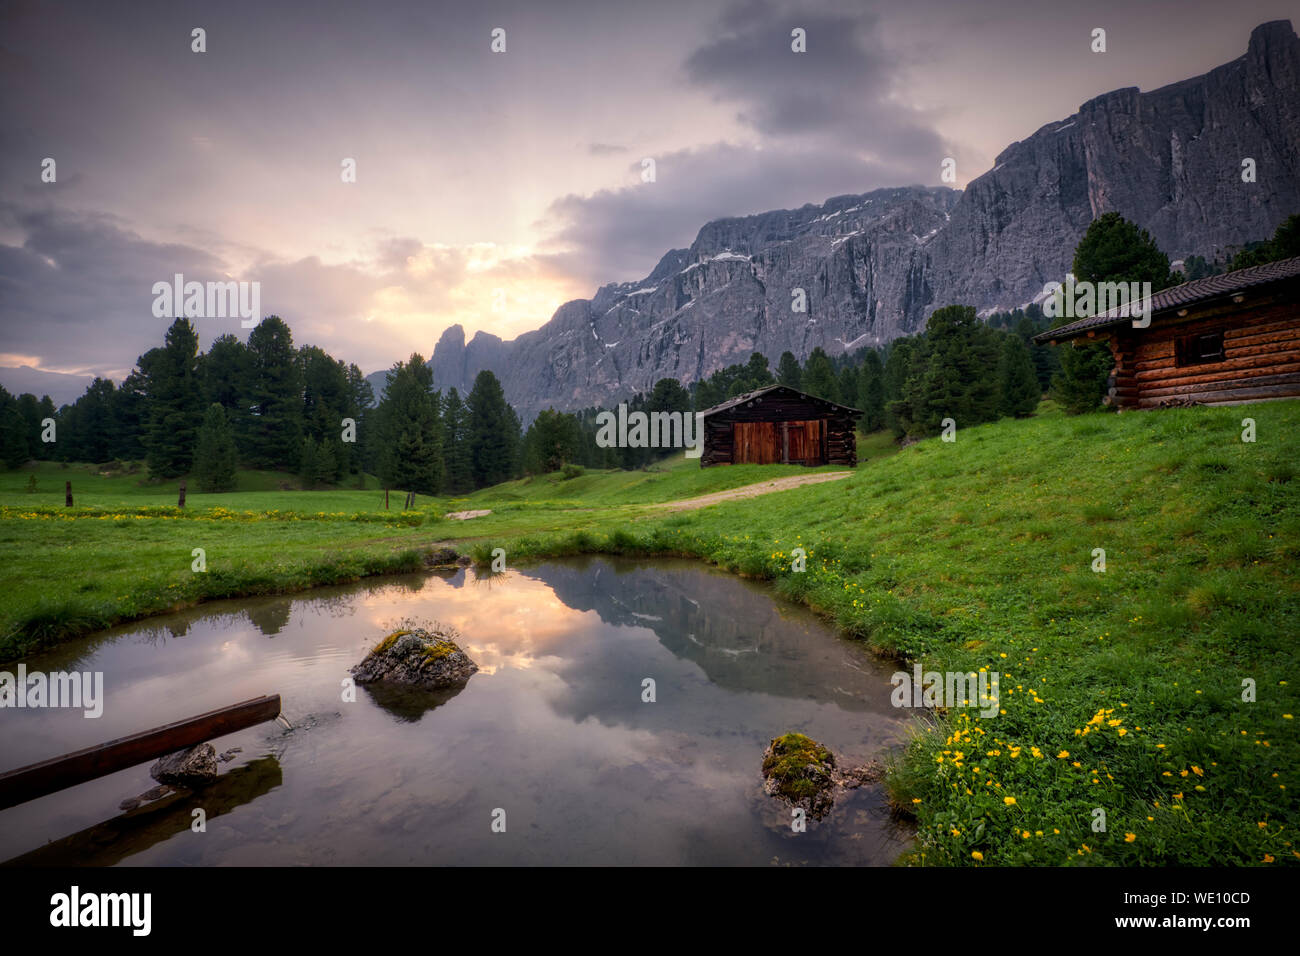 Selva di Val Gardena (Dolomites - Italy) Stock Photo